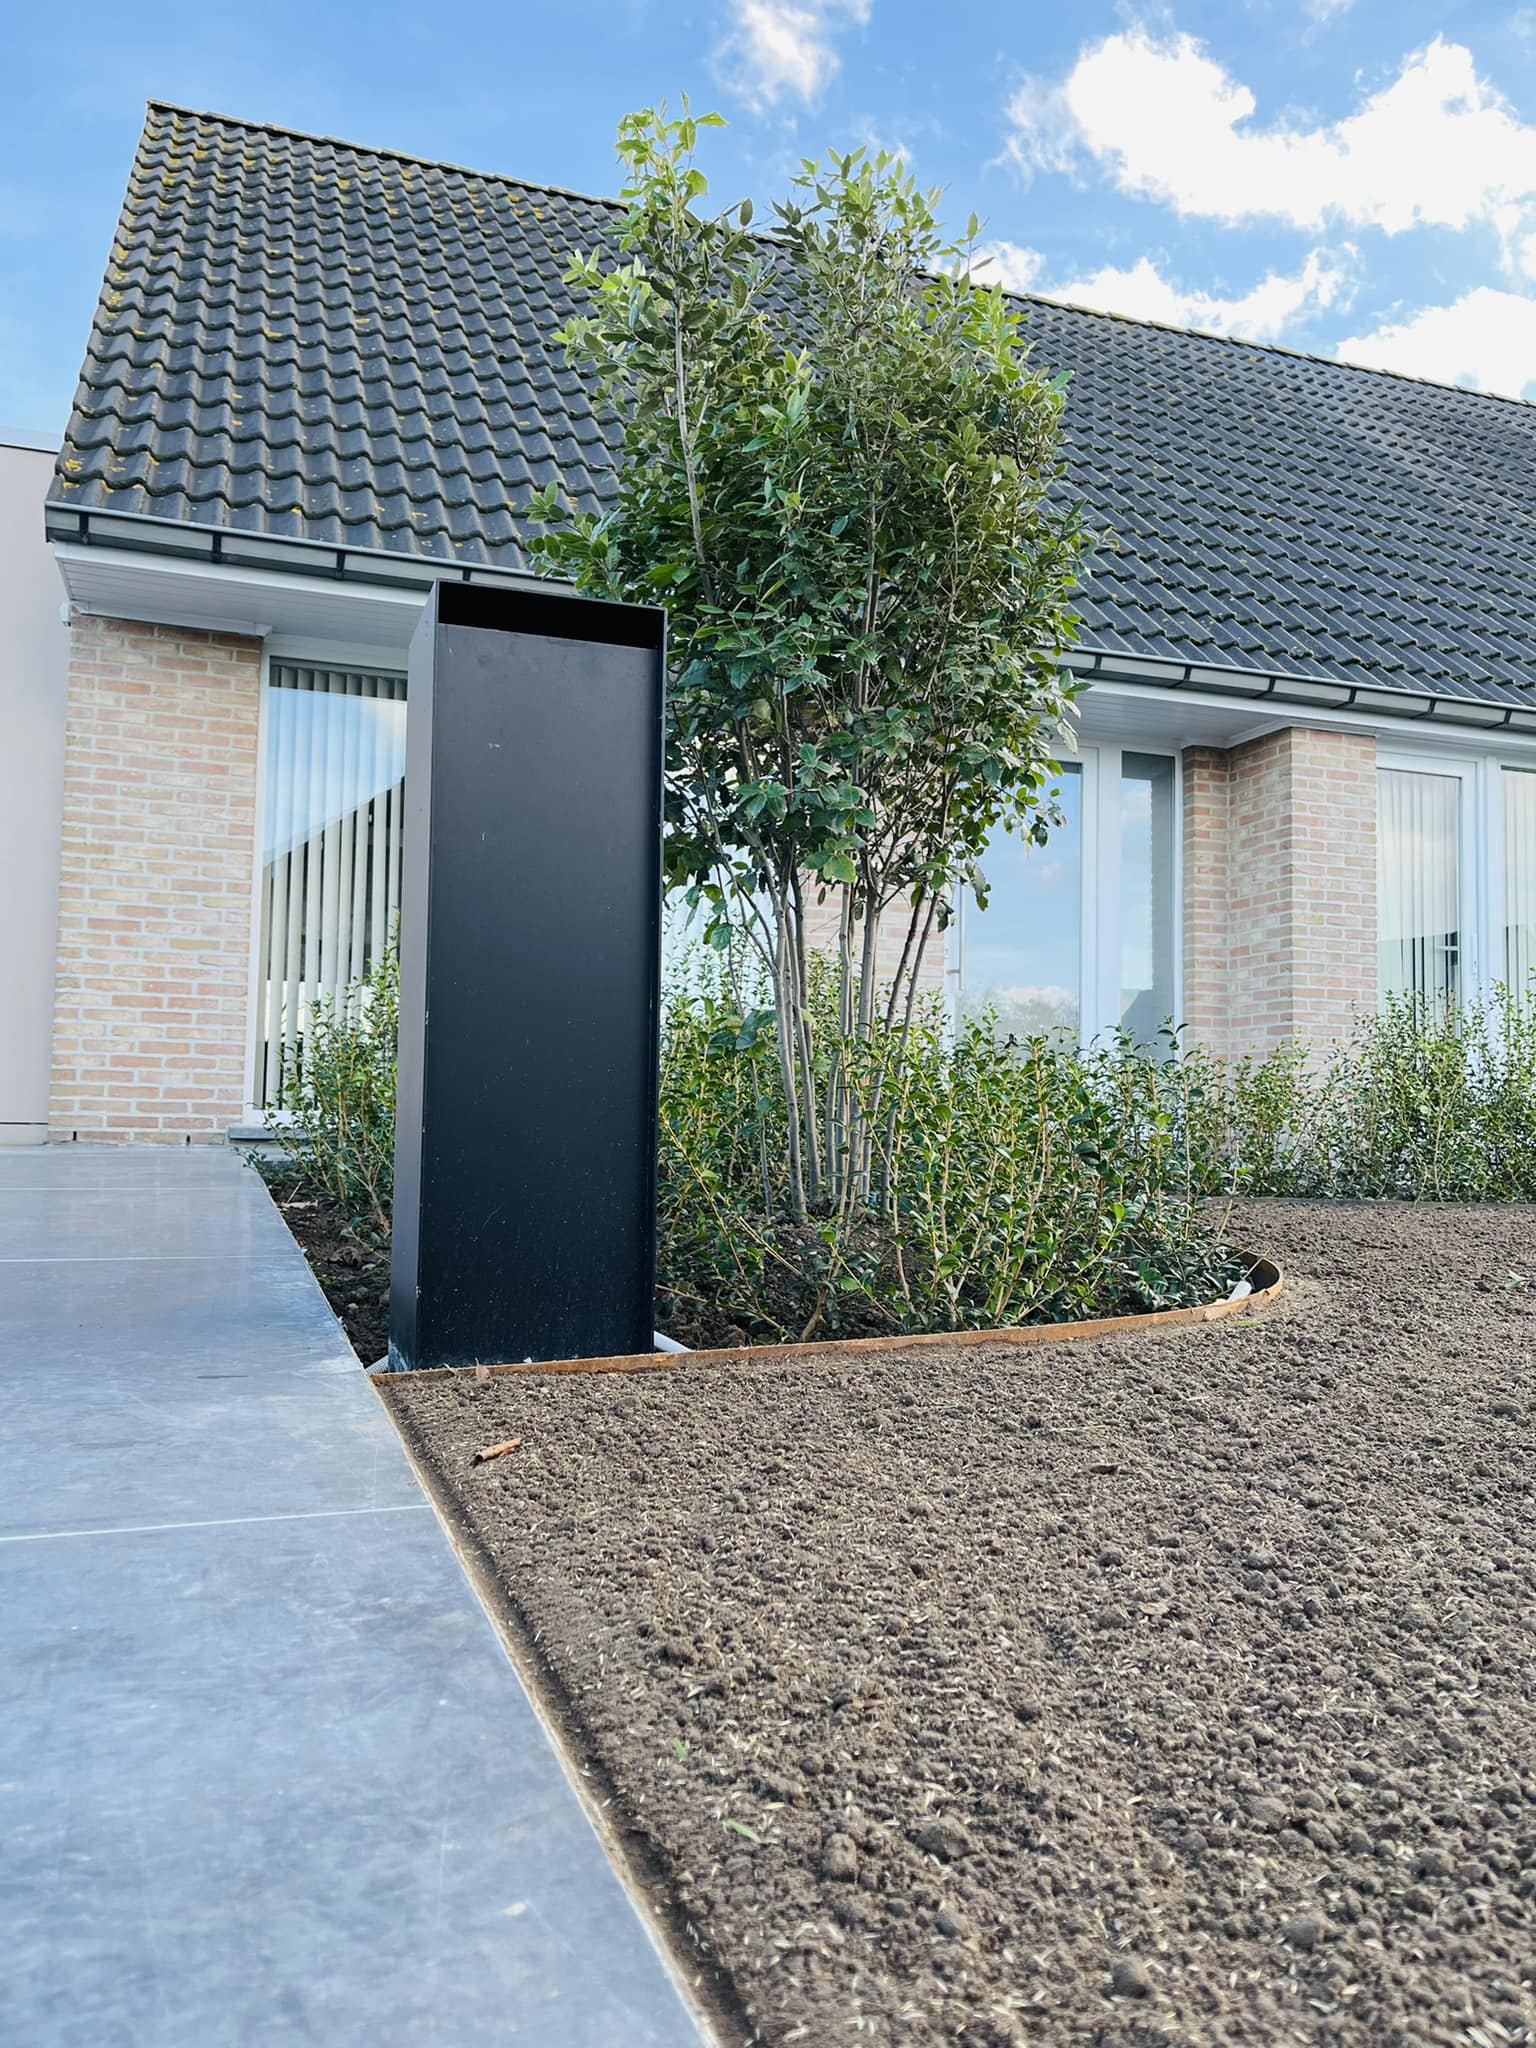 KS Garden Style - Totale tuinrenovatie, Oostnieuwkerke